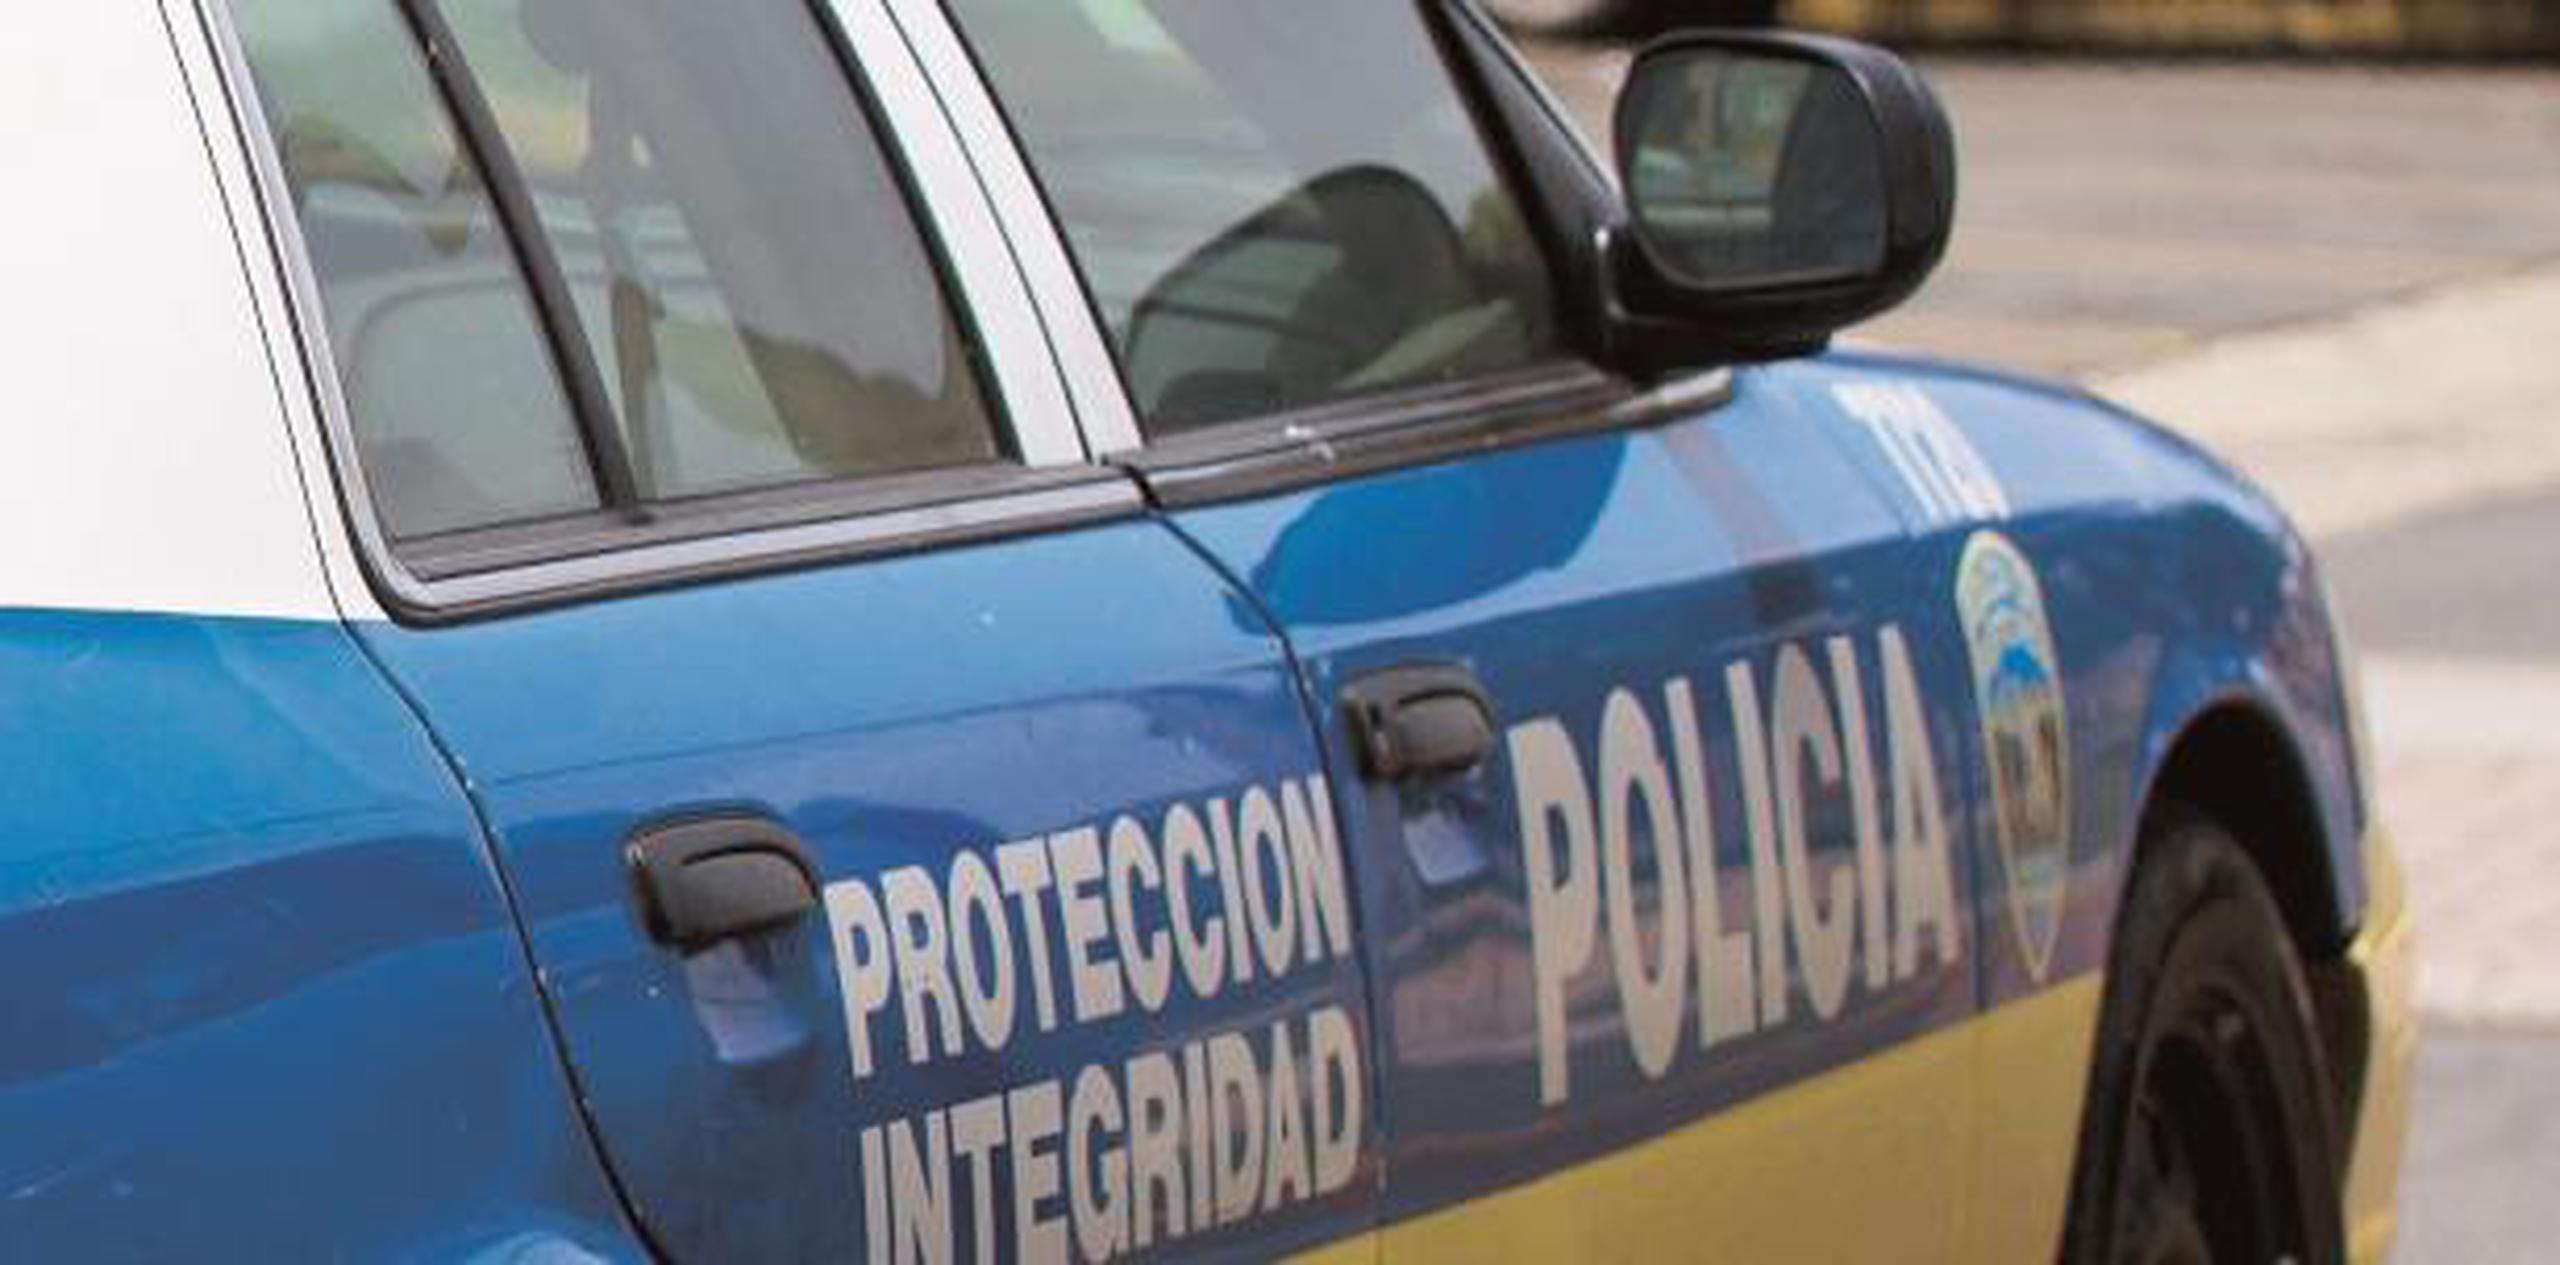 La División de Patrullas de Carreteras de Arecibo investiga ambos casos. (Archivo)